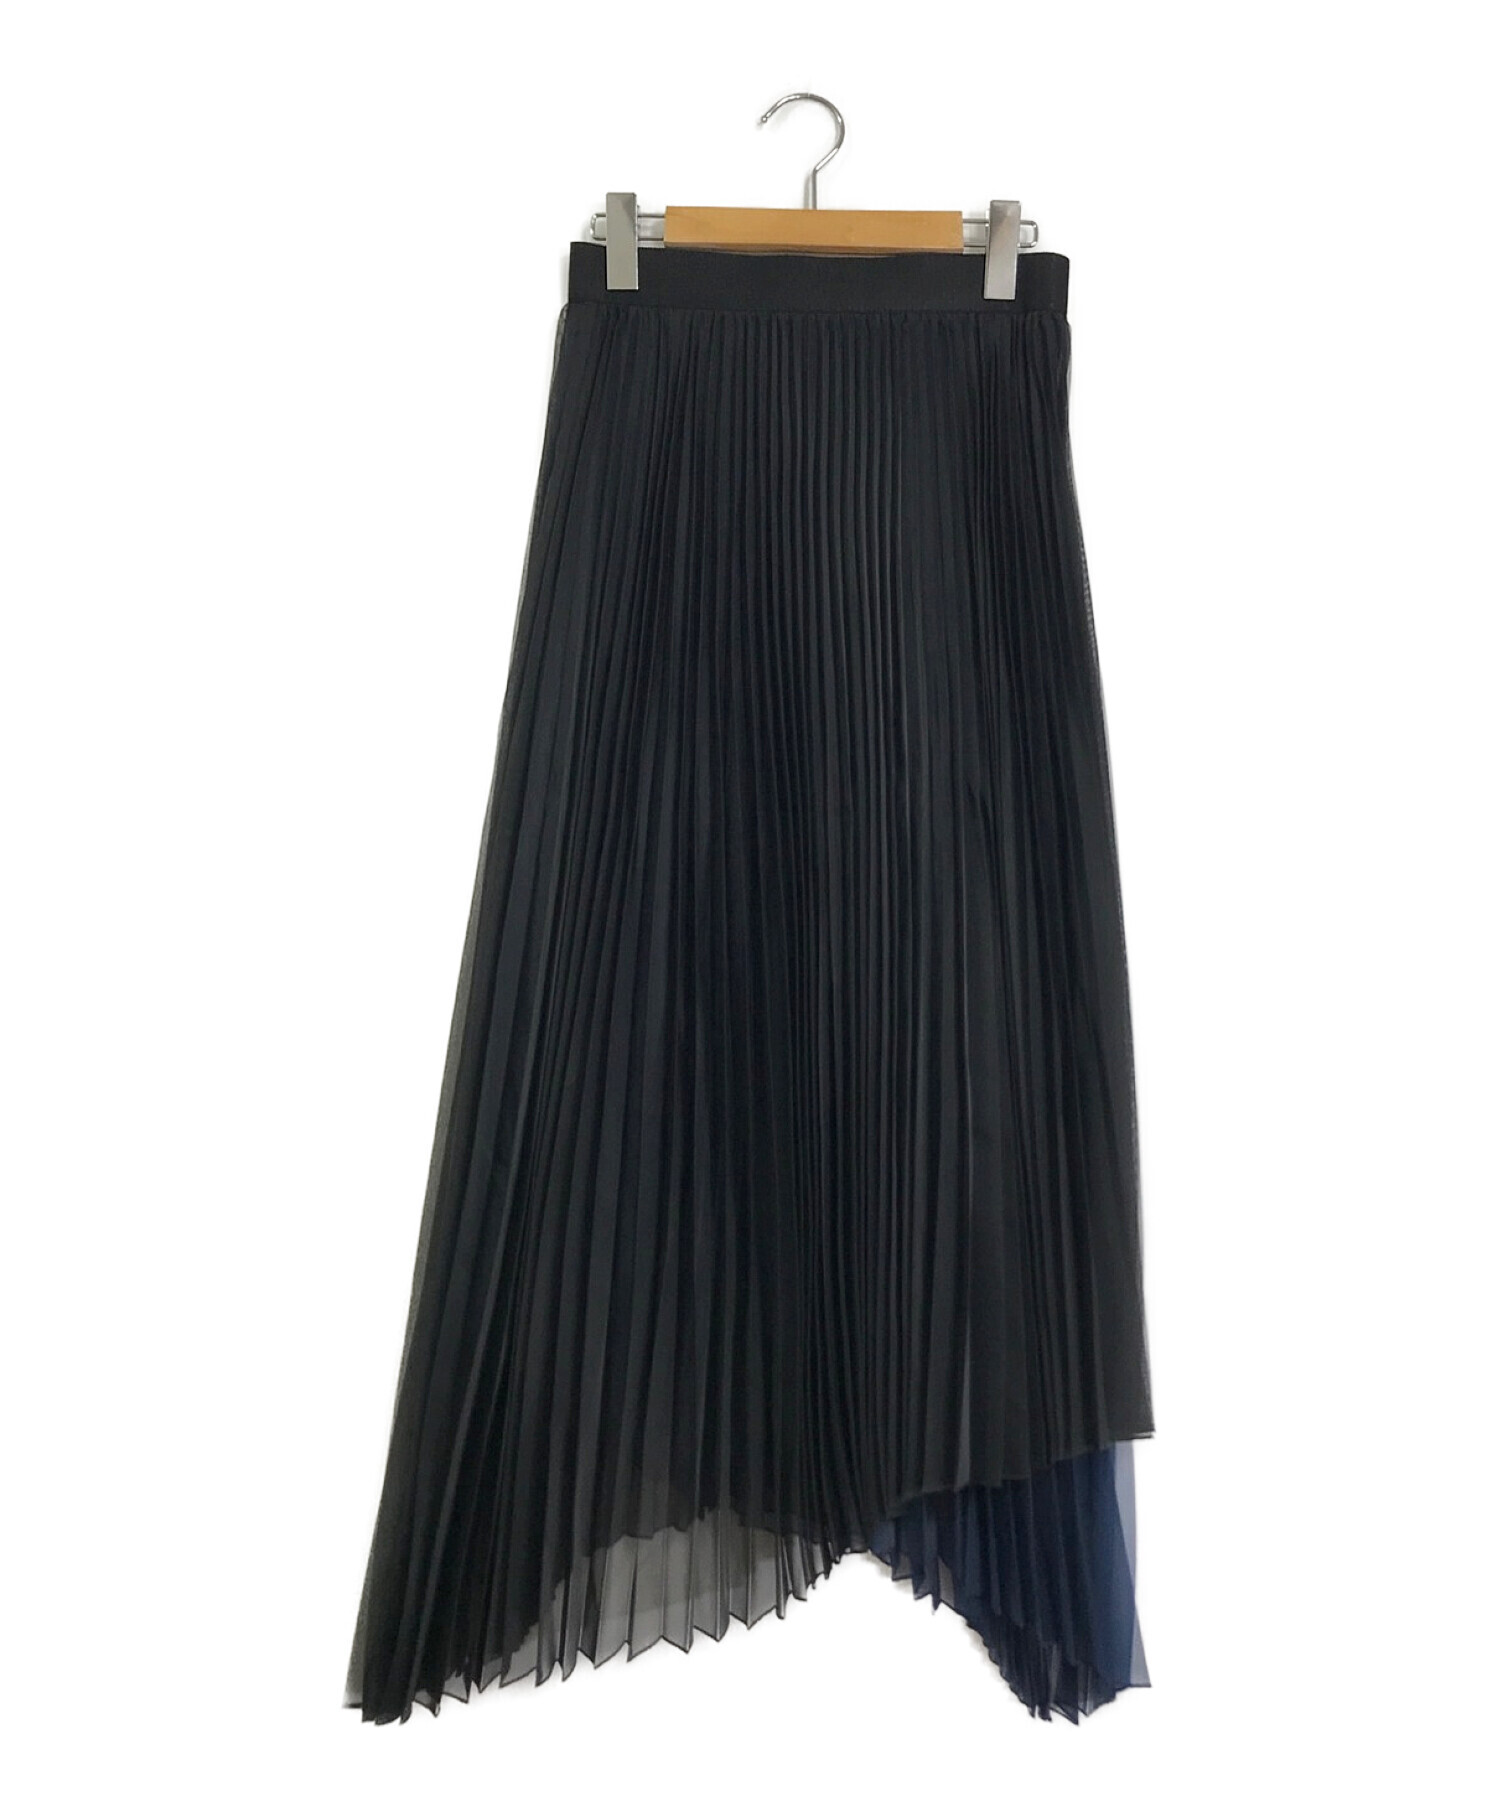 CYCLAS (シクラス) ポリエステルオーガンジー プリーツスカート ネイビー×ブラック サイズ:36